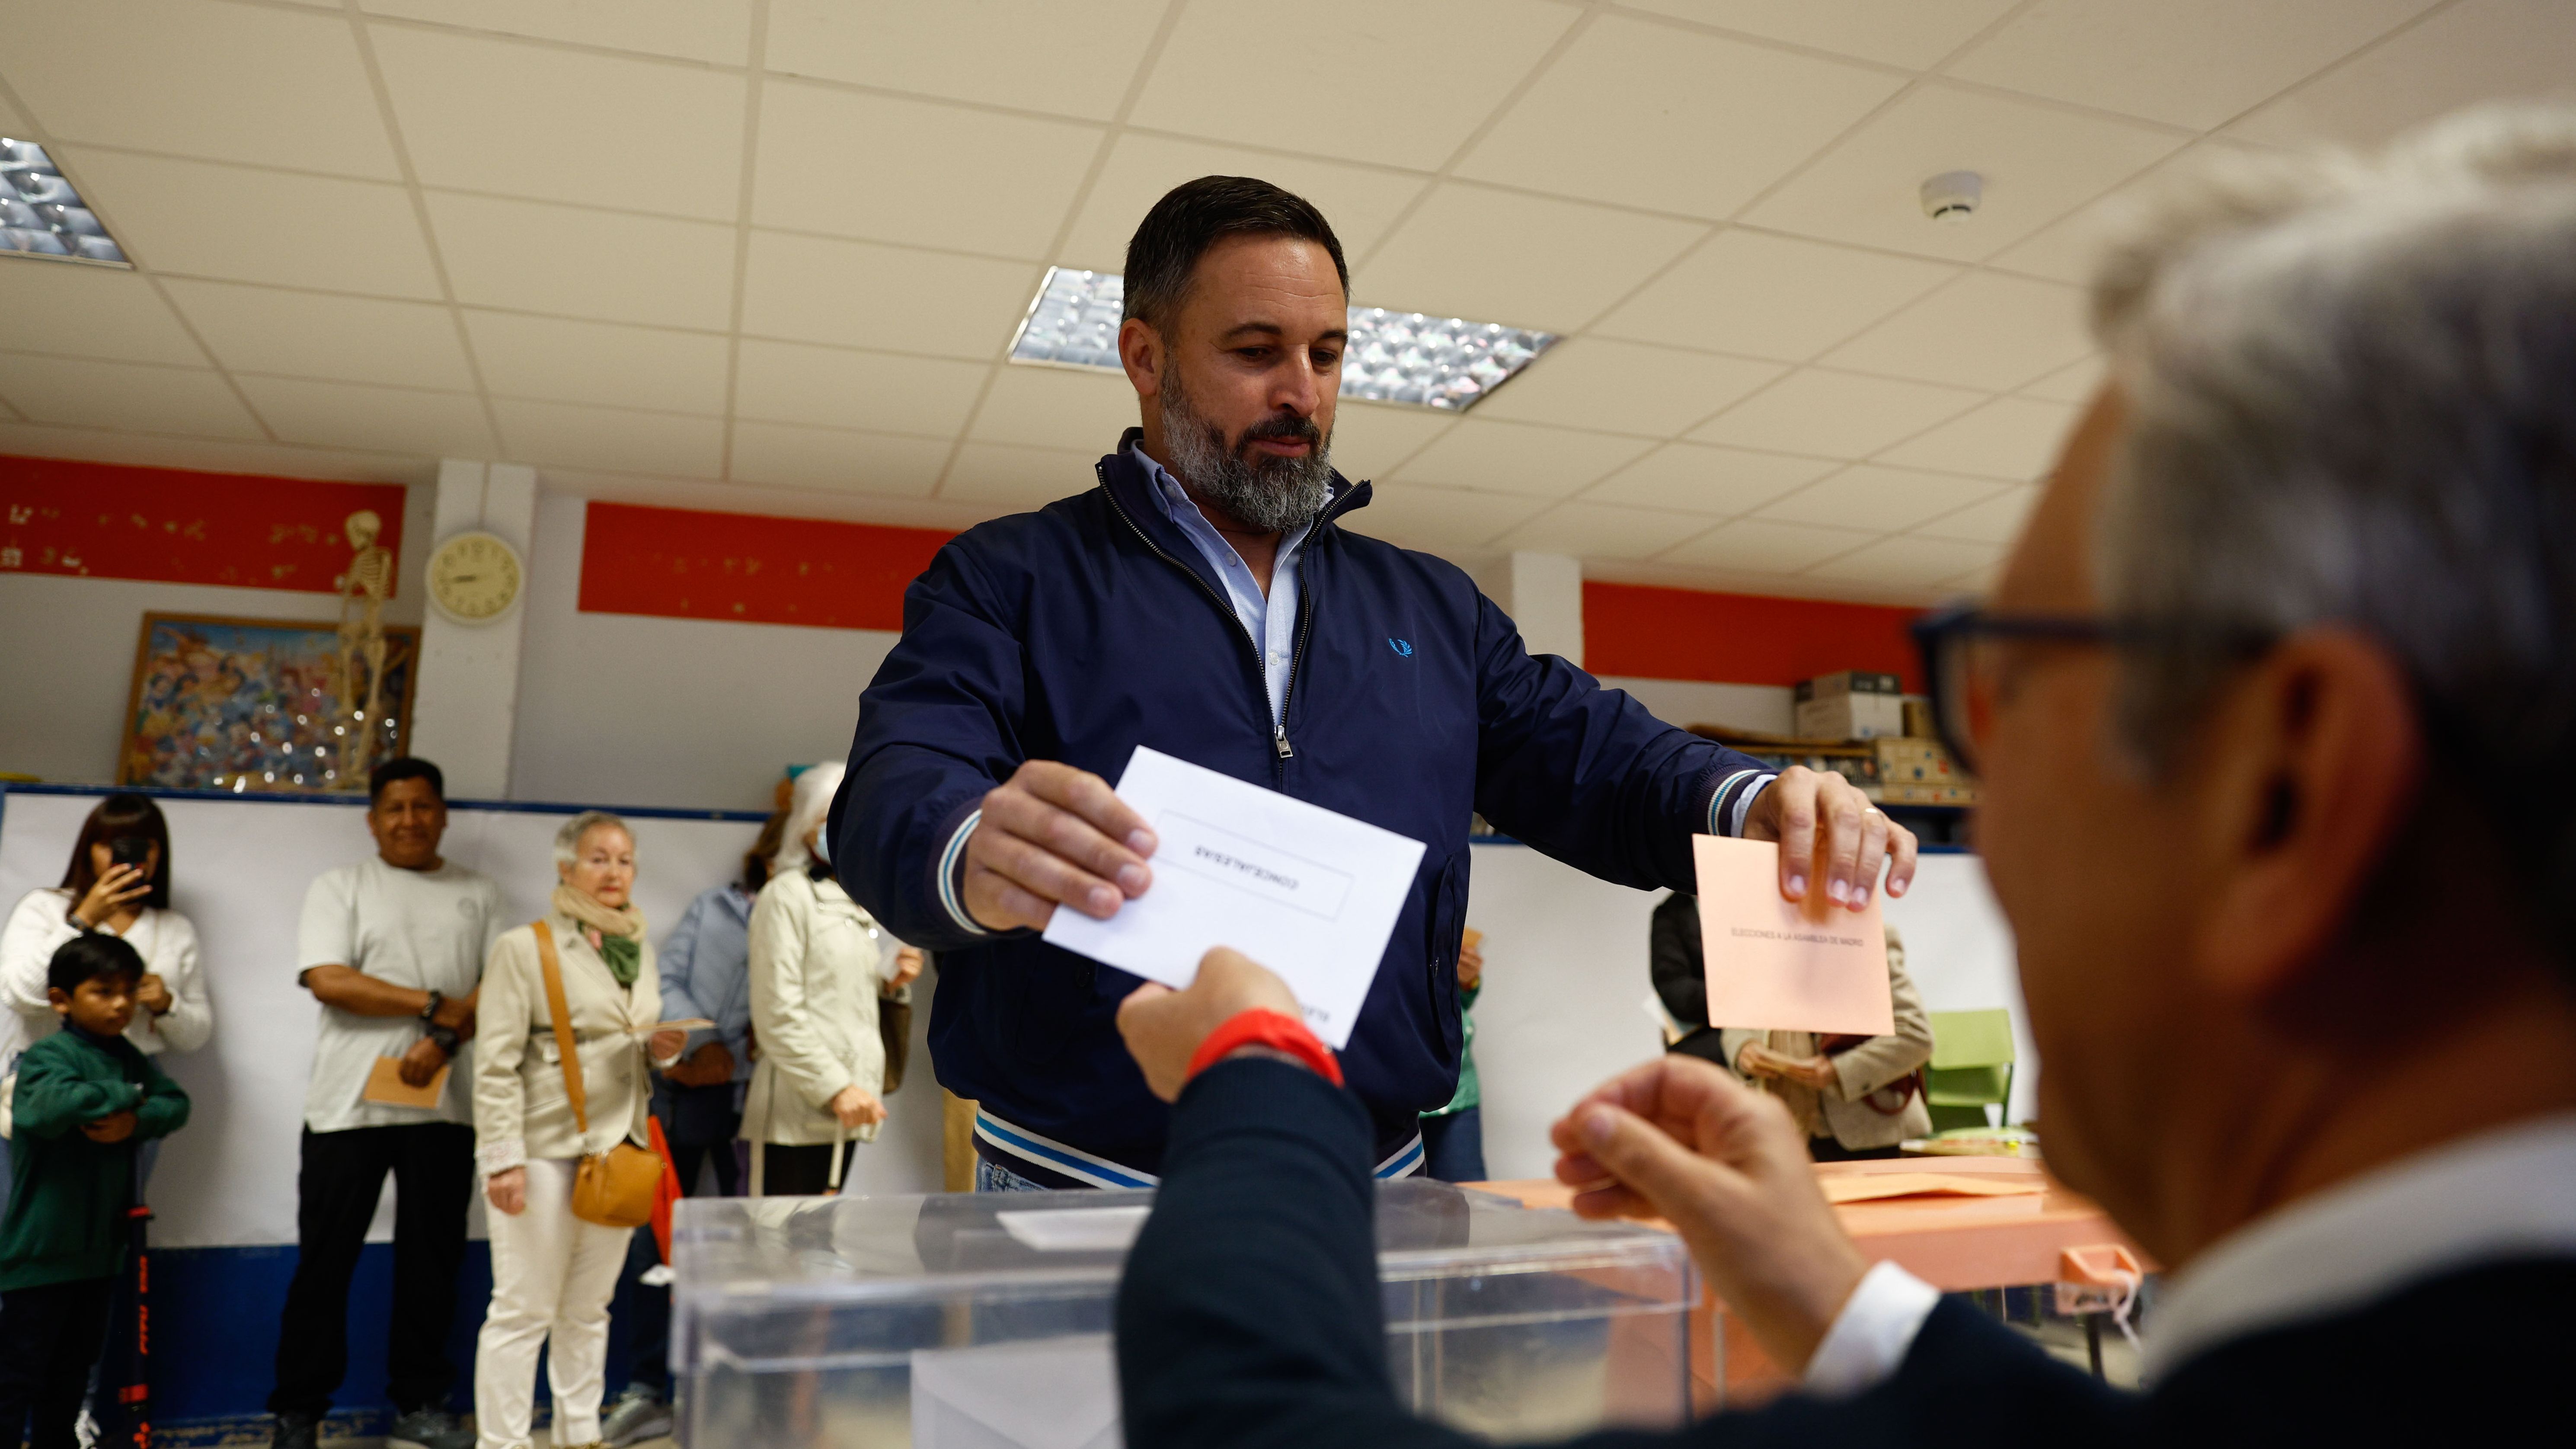 Santiago Abascal pide que las urnas se llenen de votos “libres y limpios”